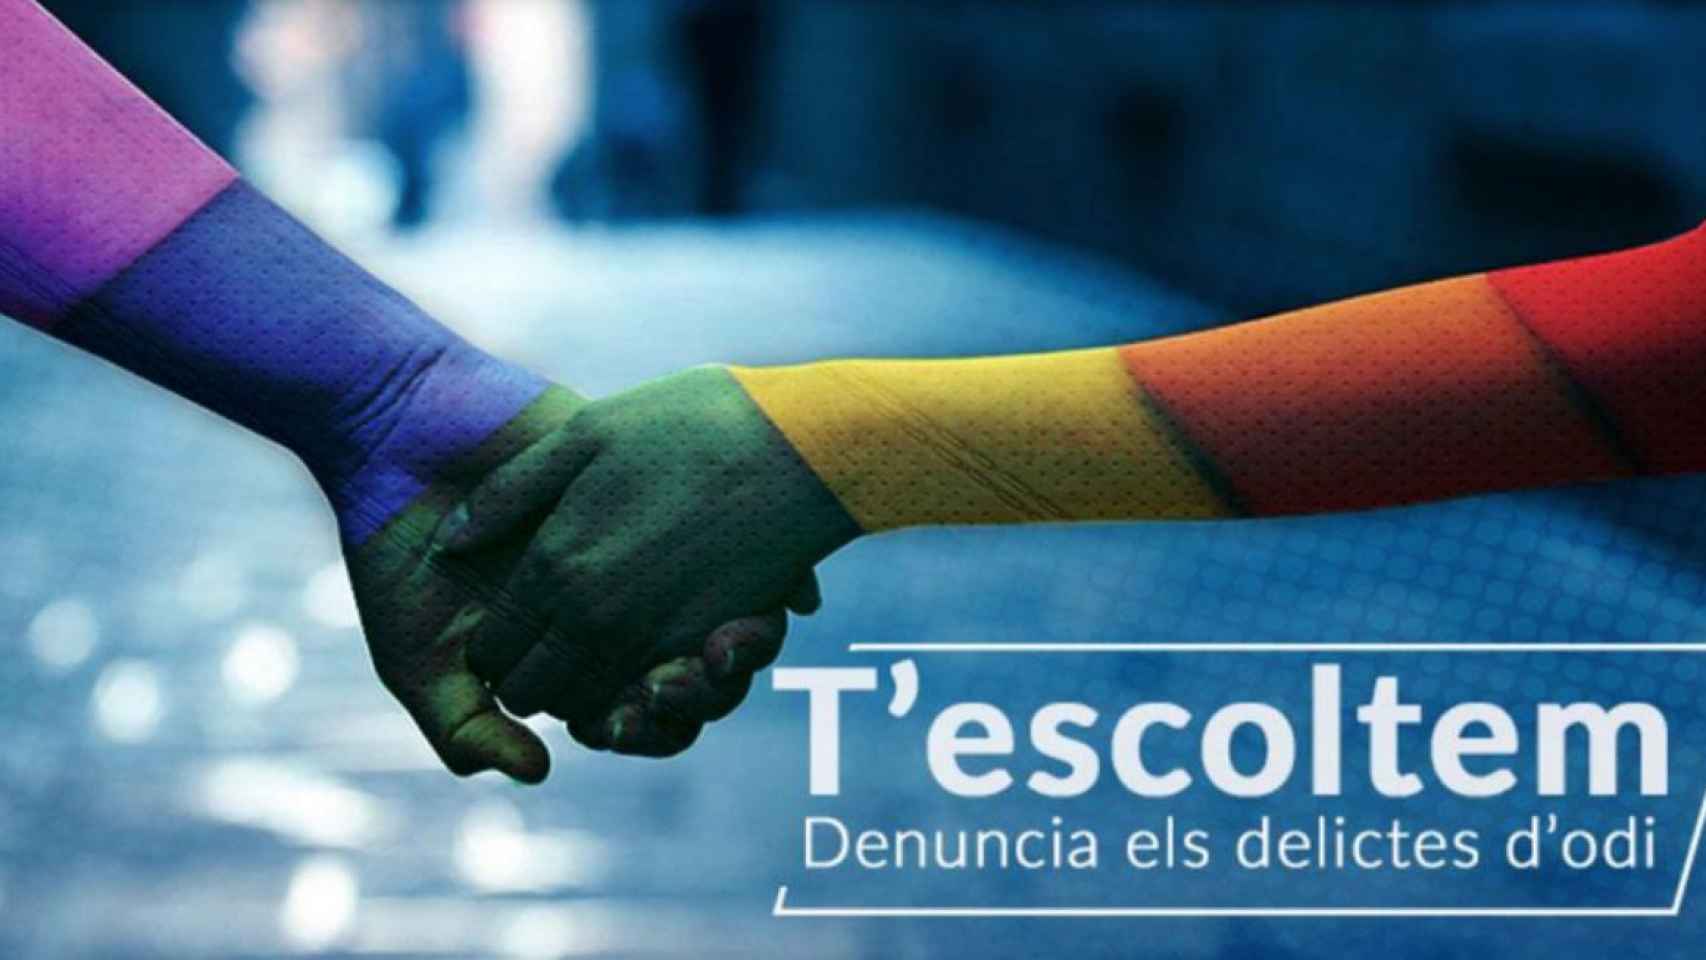 Mossos animan a denunciar a las víctimas de una agresión homófoba / MOSSOS